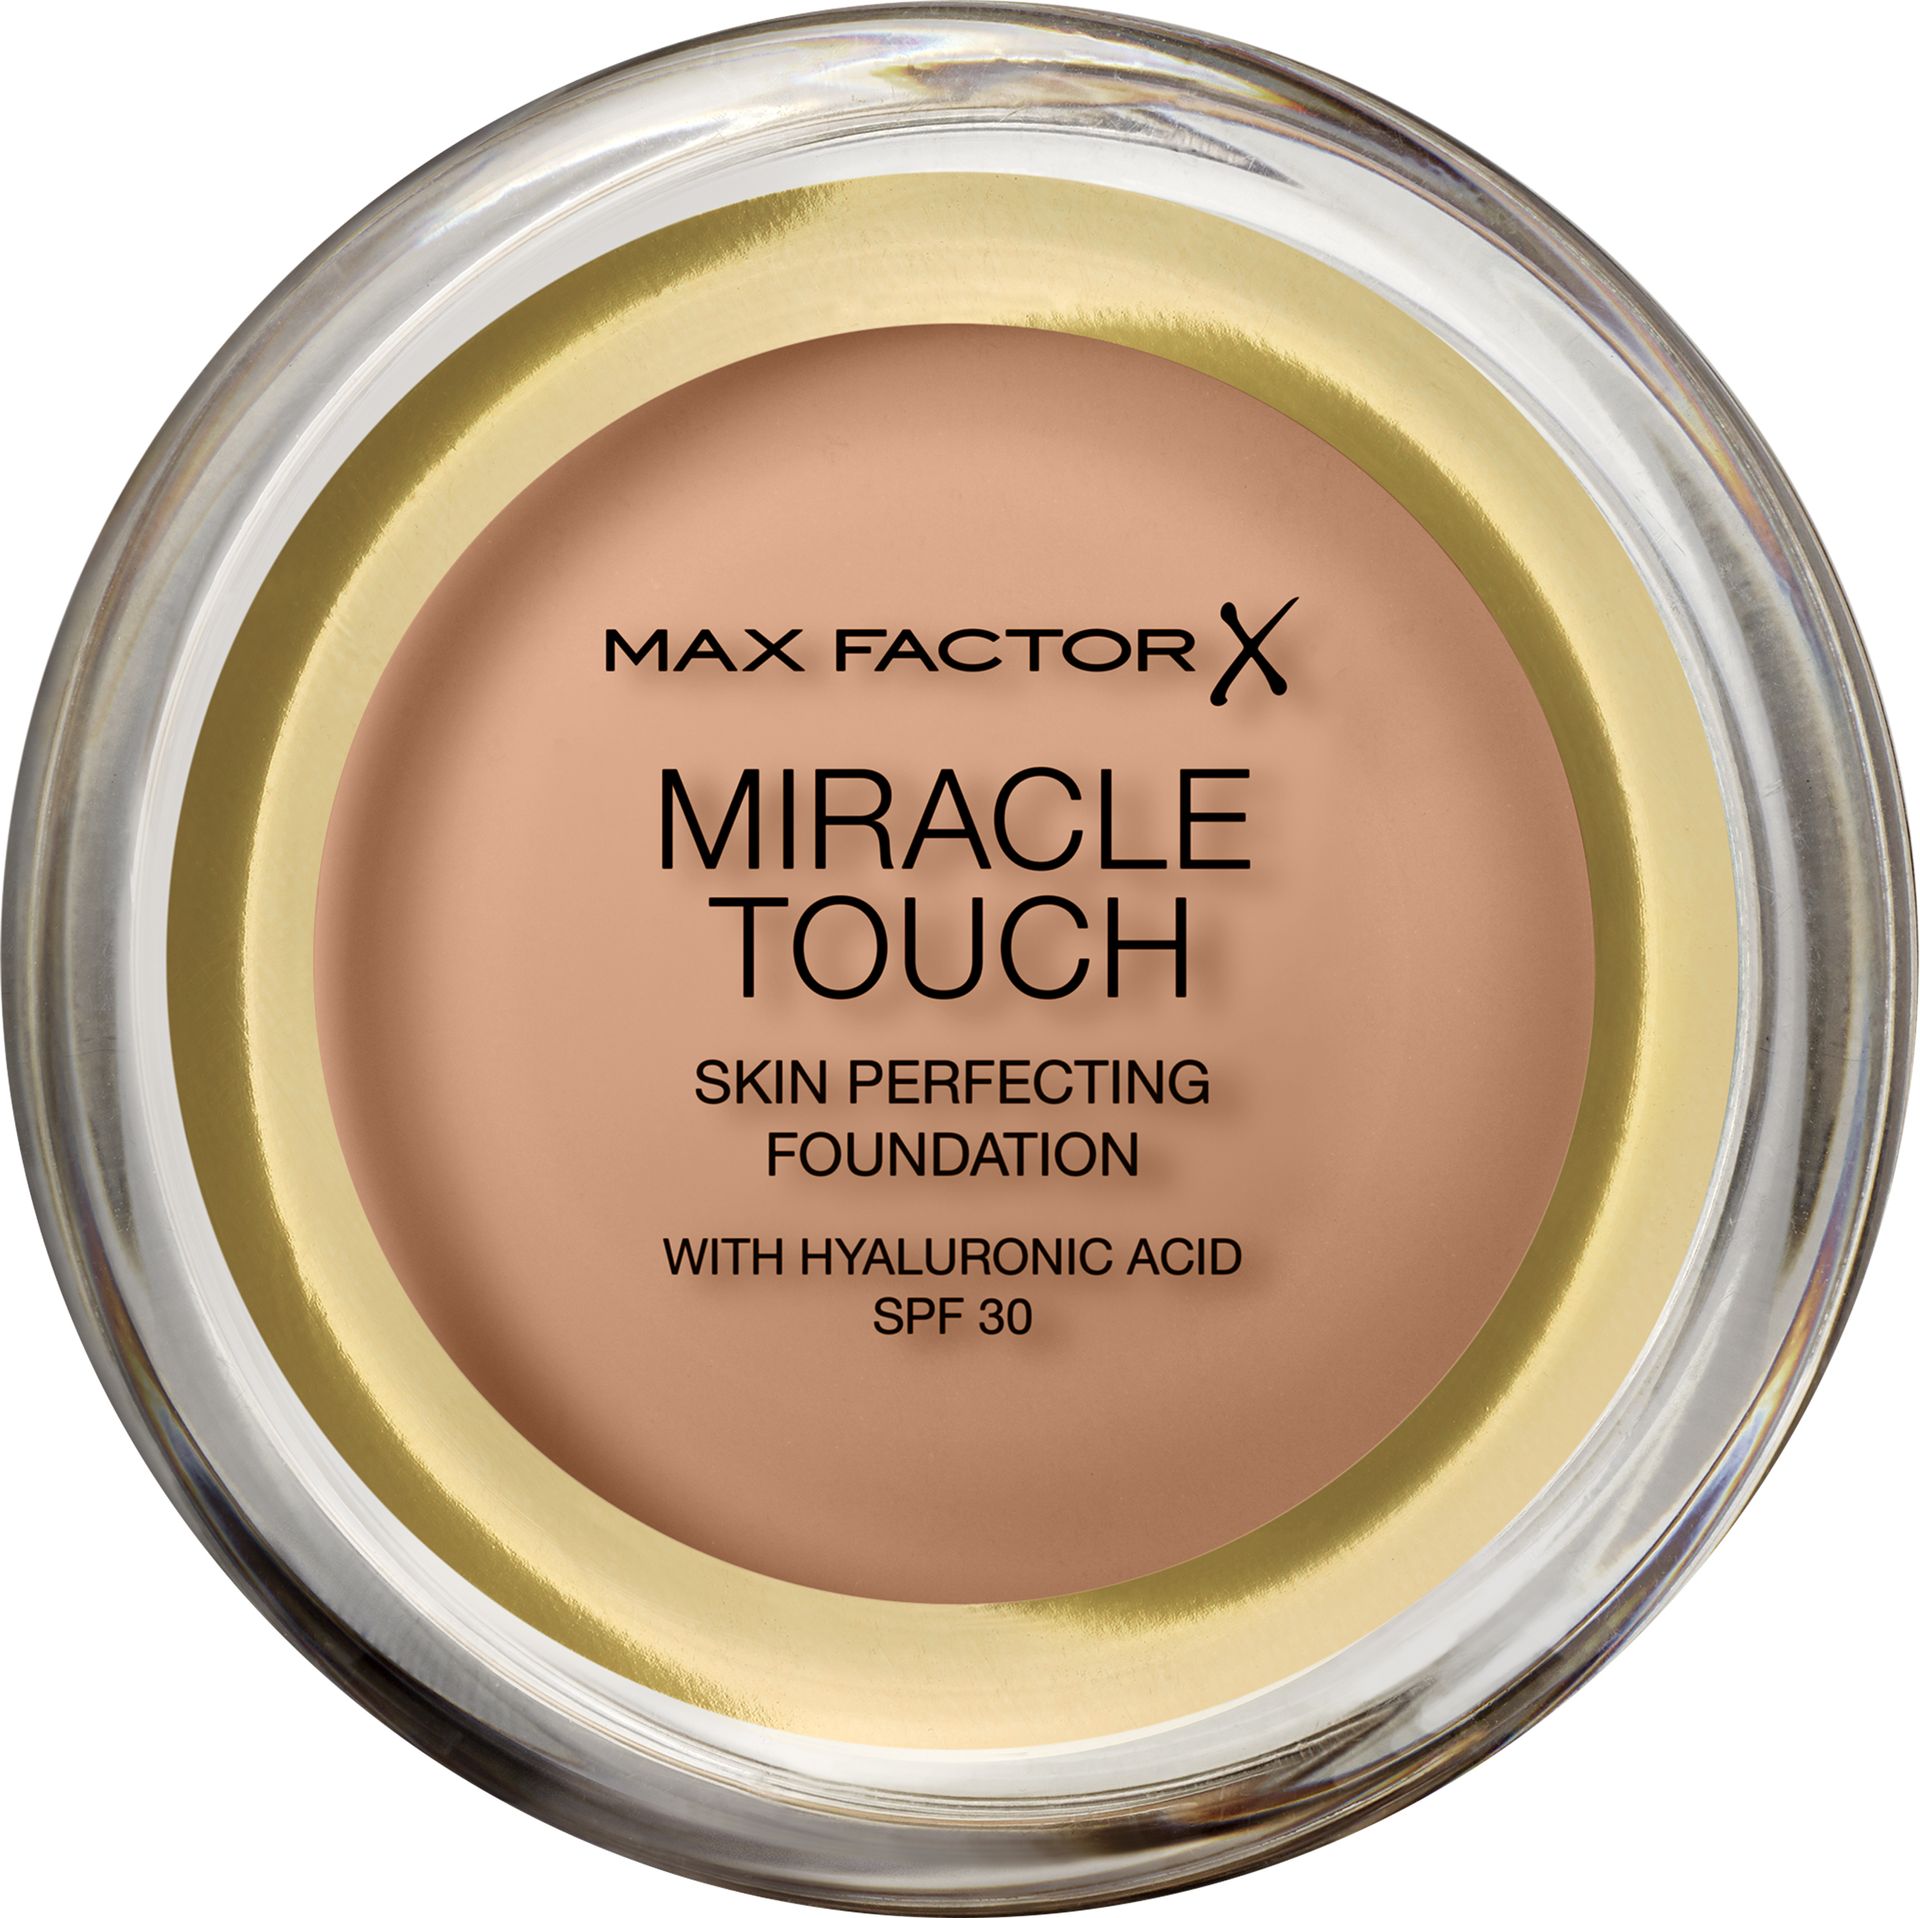 Max Factor Miracle Touch Foundation podkład z kwasem hialuronowym dla gładkiej i równomiernej skóry, 1 opakowanie (1 x 12 g)